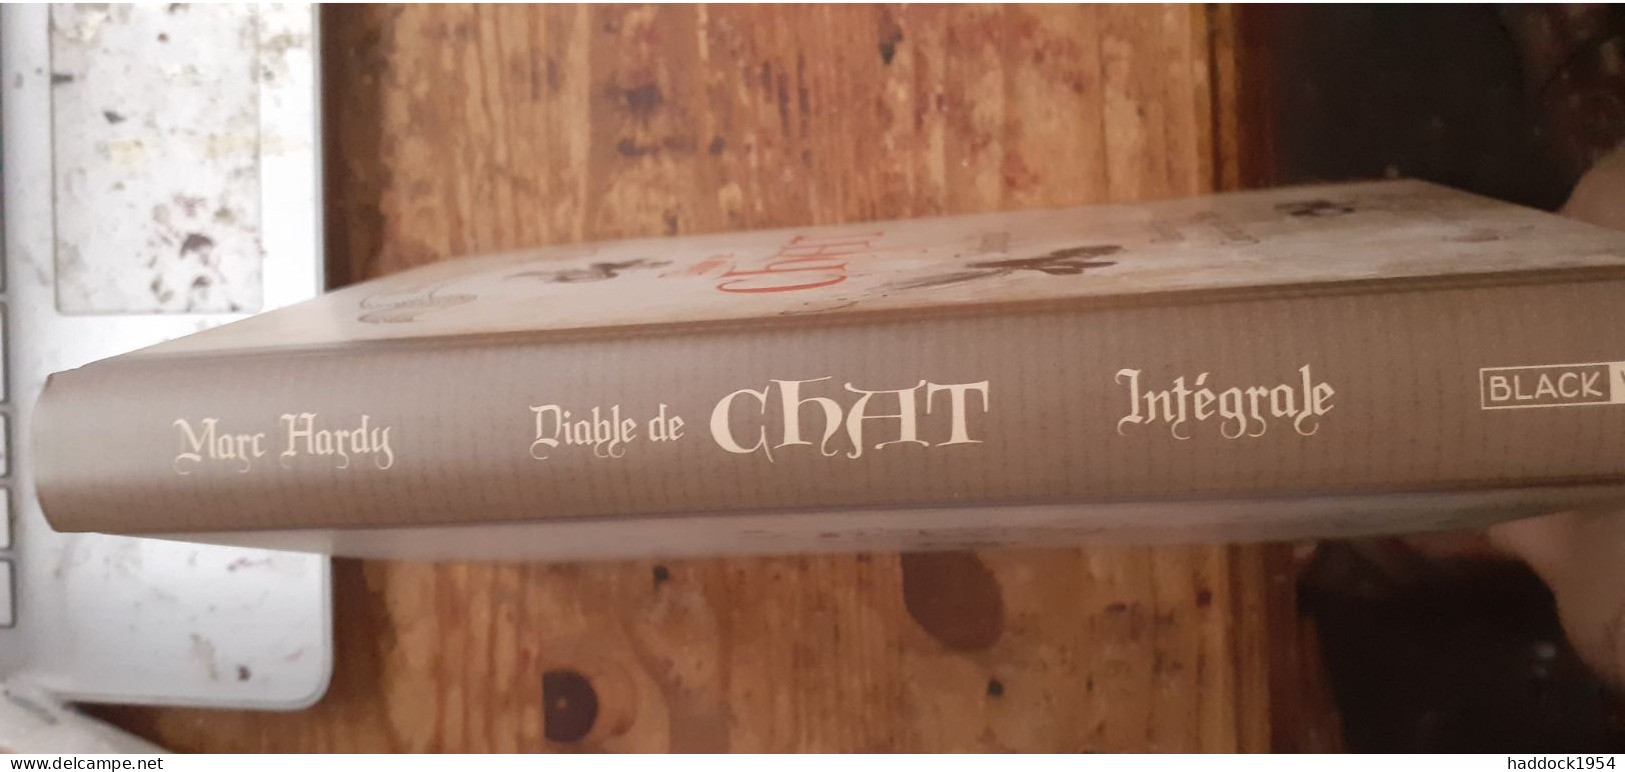 Diable De Chat Intégrale MARC HARDY Black Et White éditions 2019 - Primeras Copias